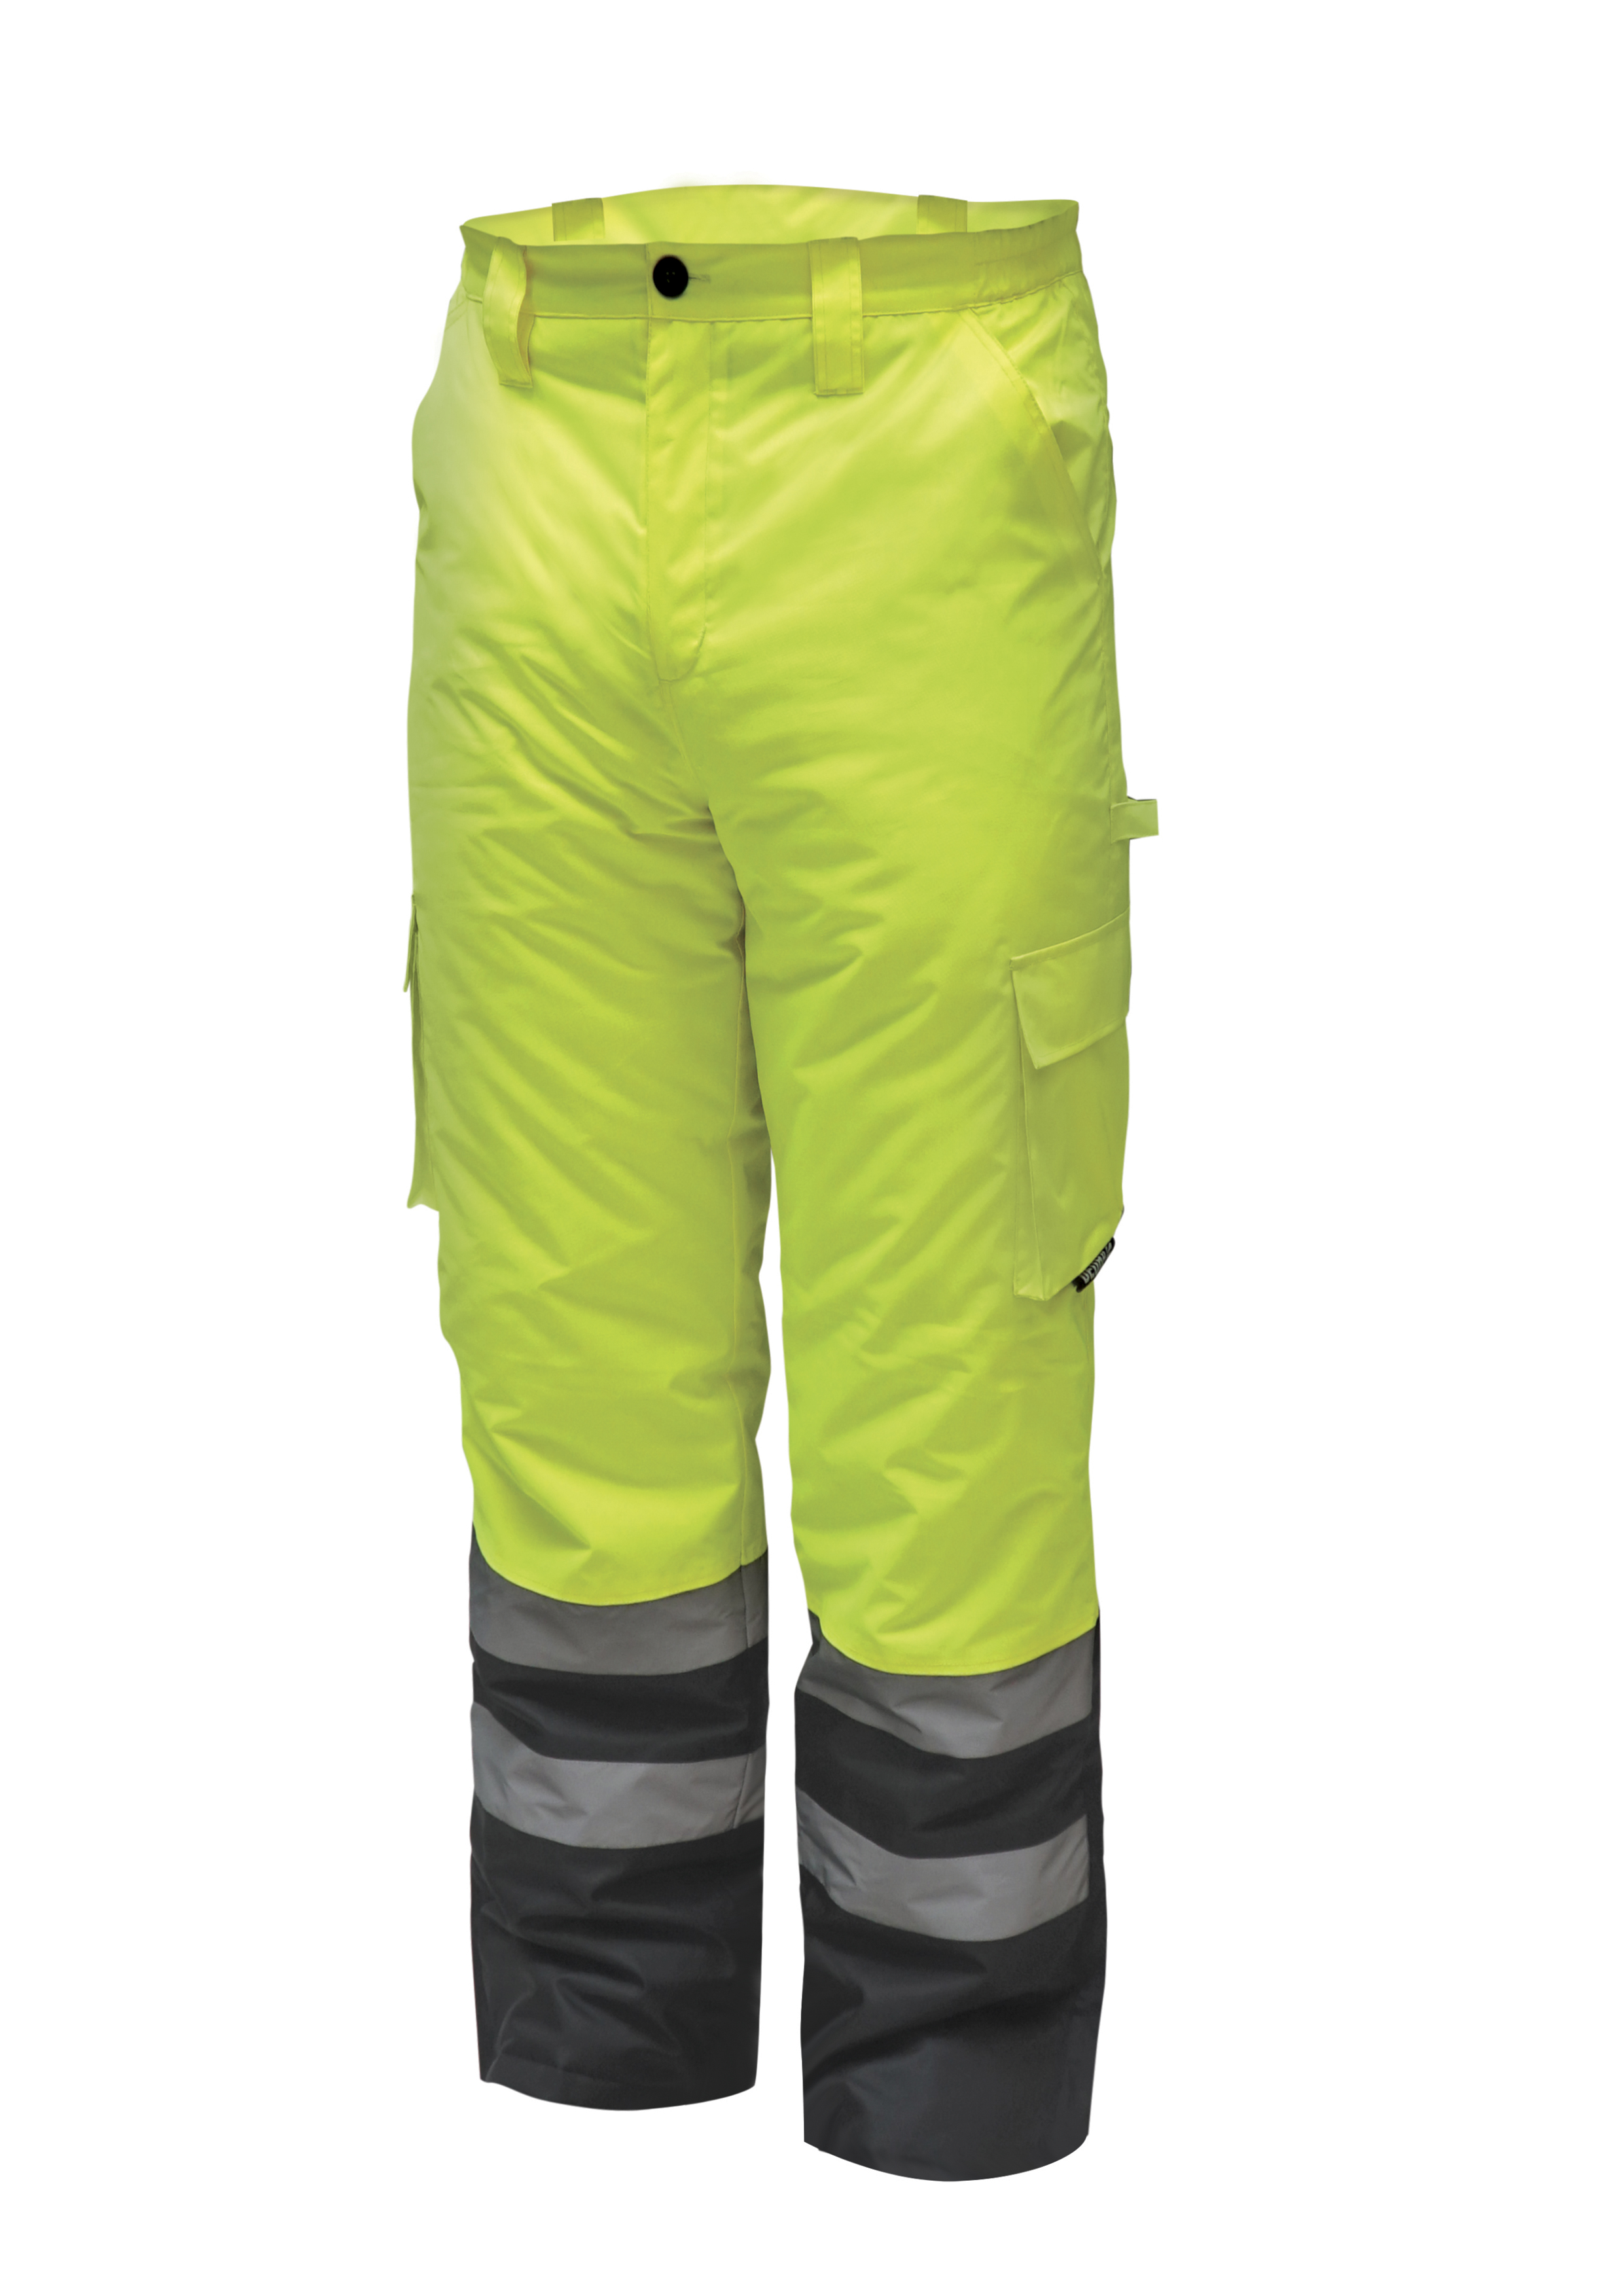 Reflexní zateplené kalhoty vel. M, žluté DEDRA BH80SP1-M + Dárek, servis bez starostí v hodnotě 300Kč